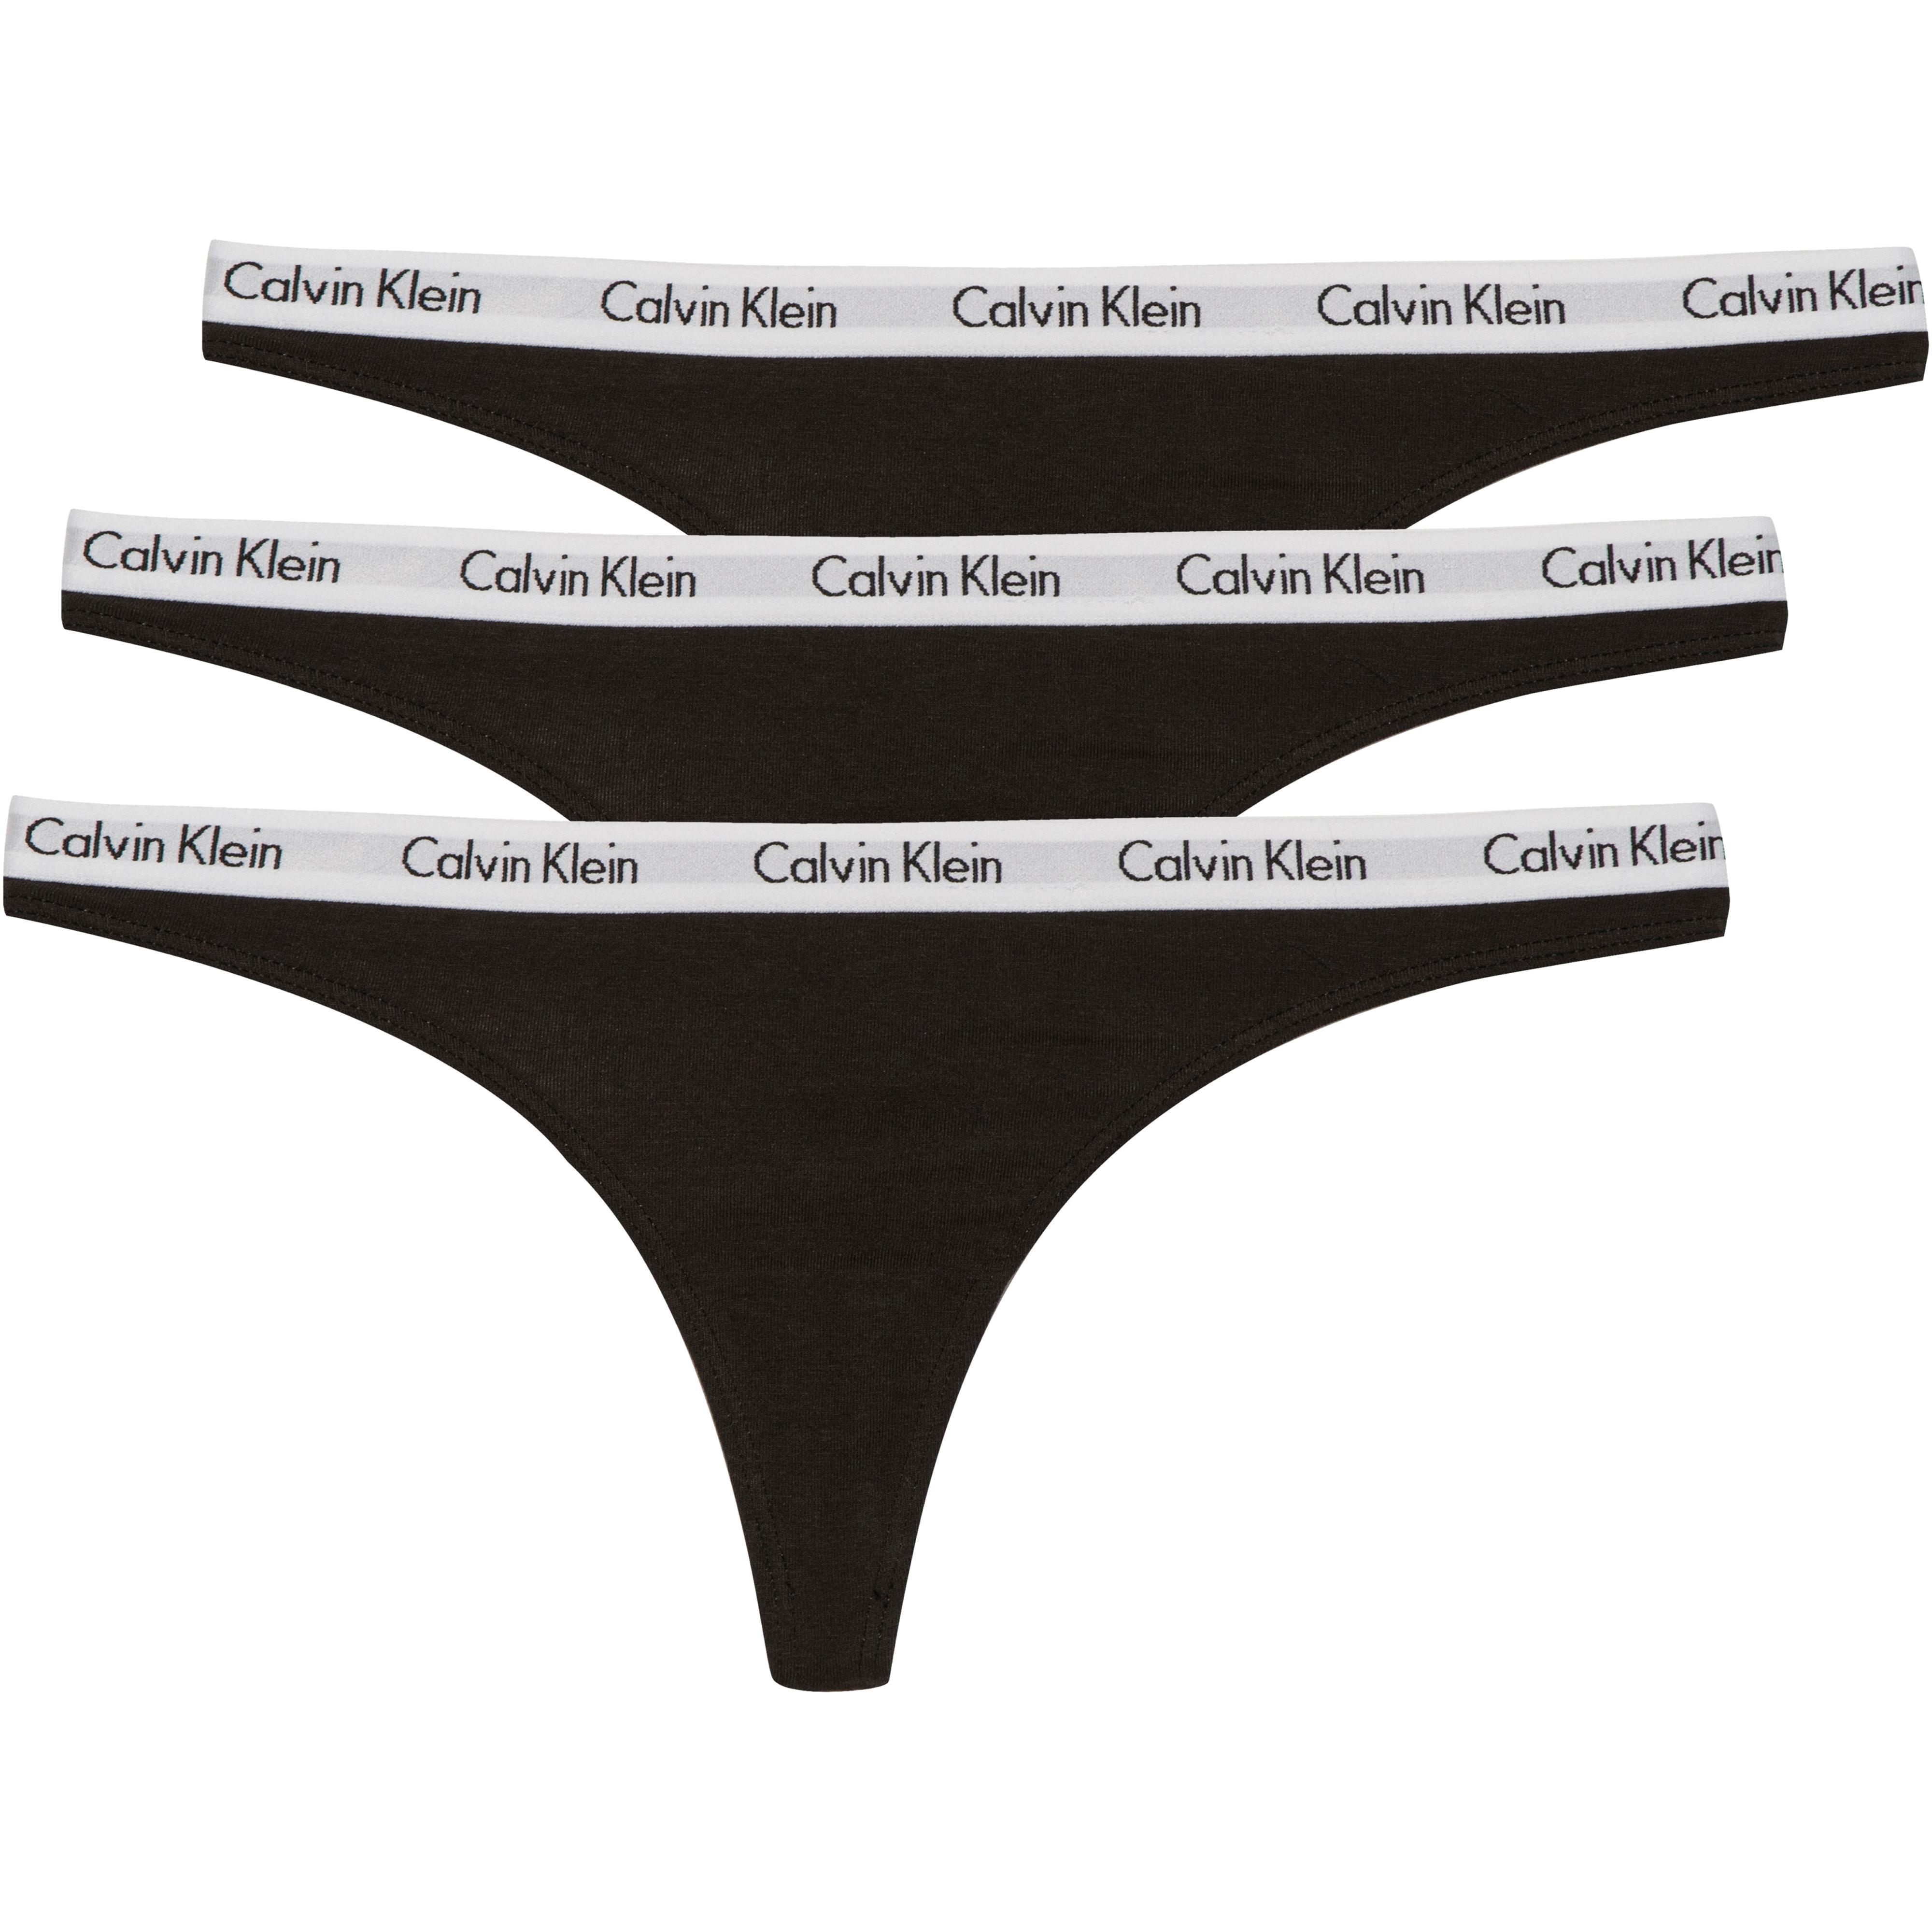 mild gedragen stuiten op Calvin Klein Damen | Jetzt Sortiment im SportScheck ansehen